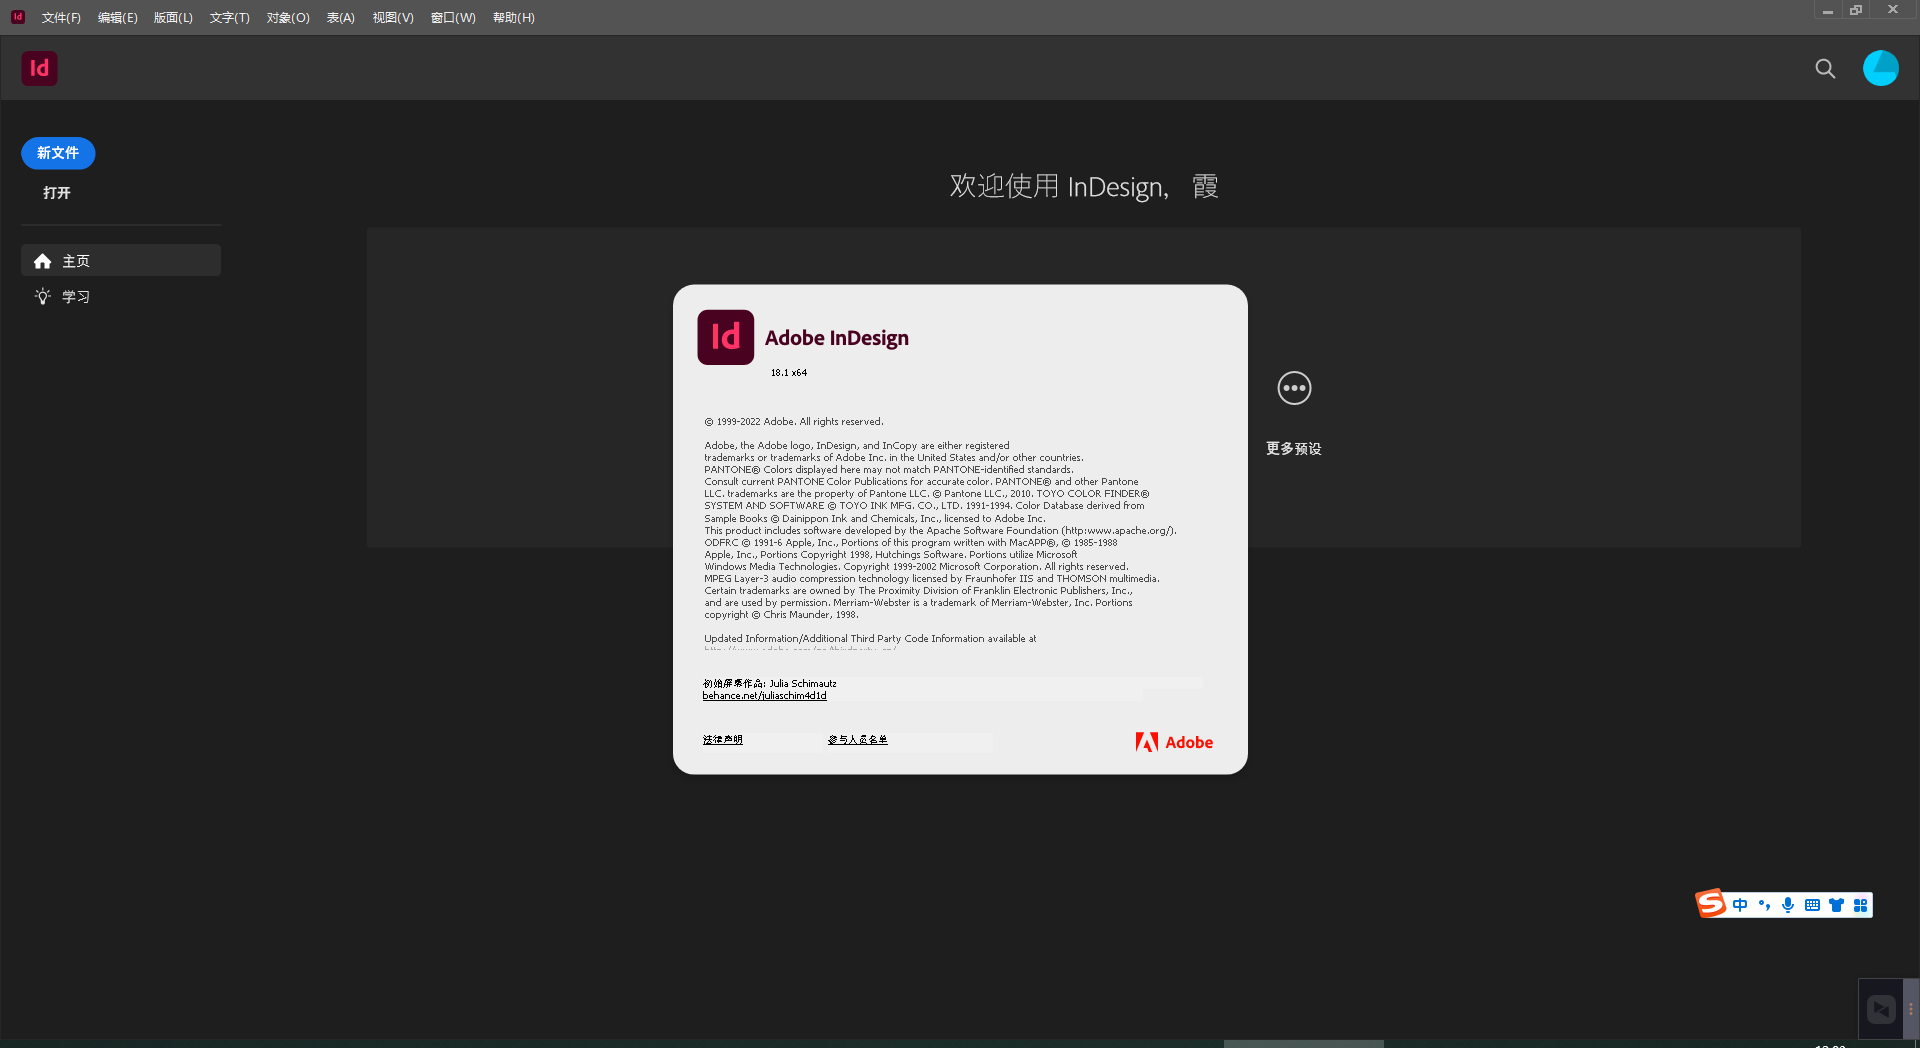 download the last version for apple Adobe InDesign 2023 v18.4.0.56